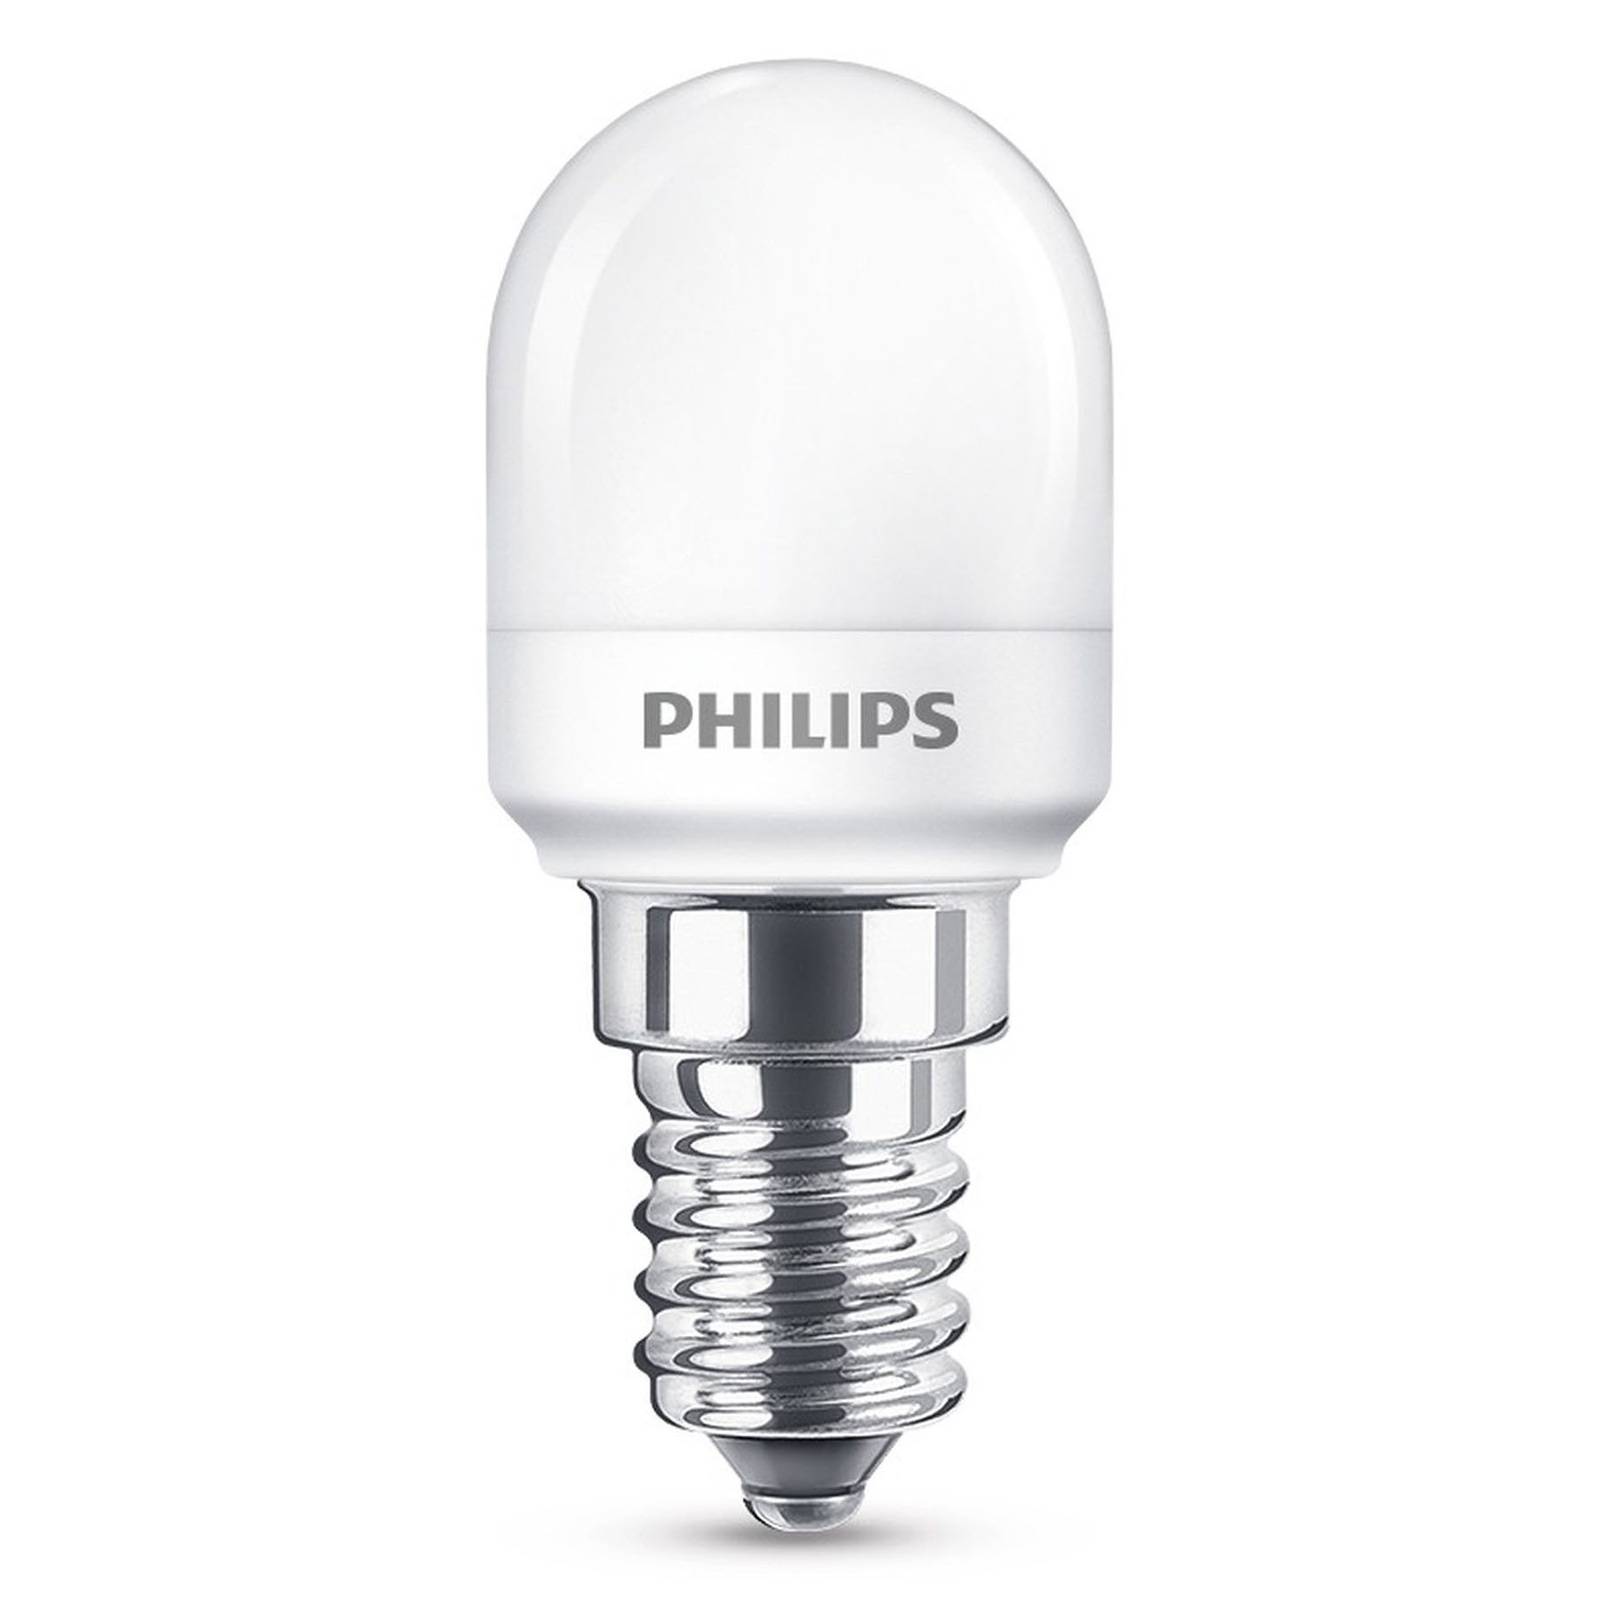 Philips Philips LED žárovka do lednice E14 T25 0,9W matná